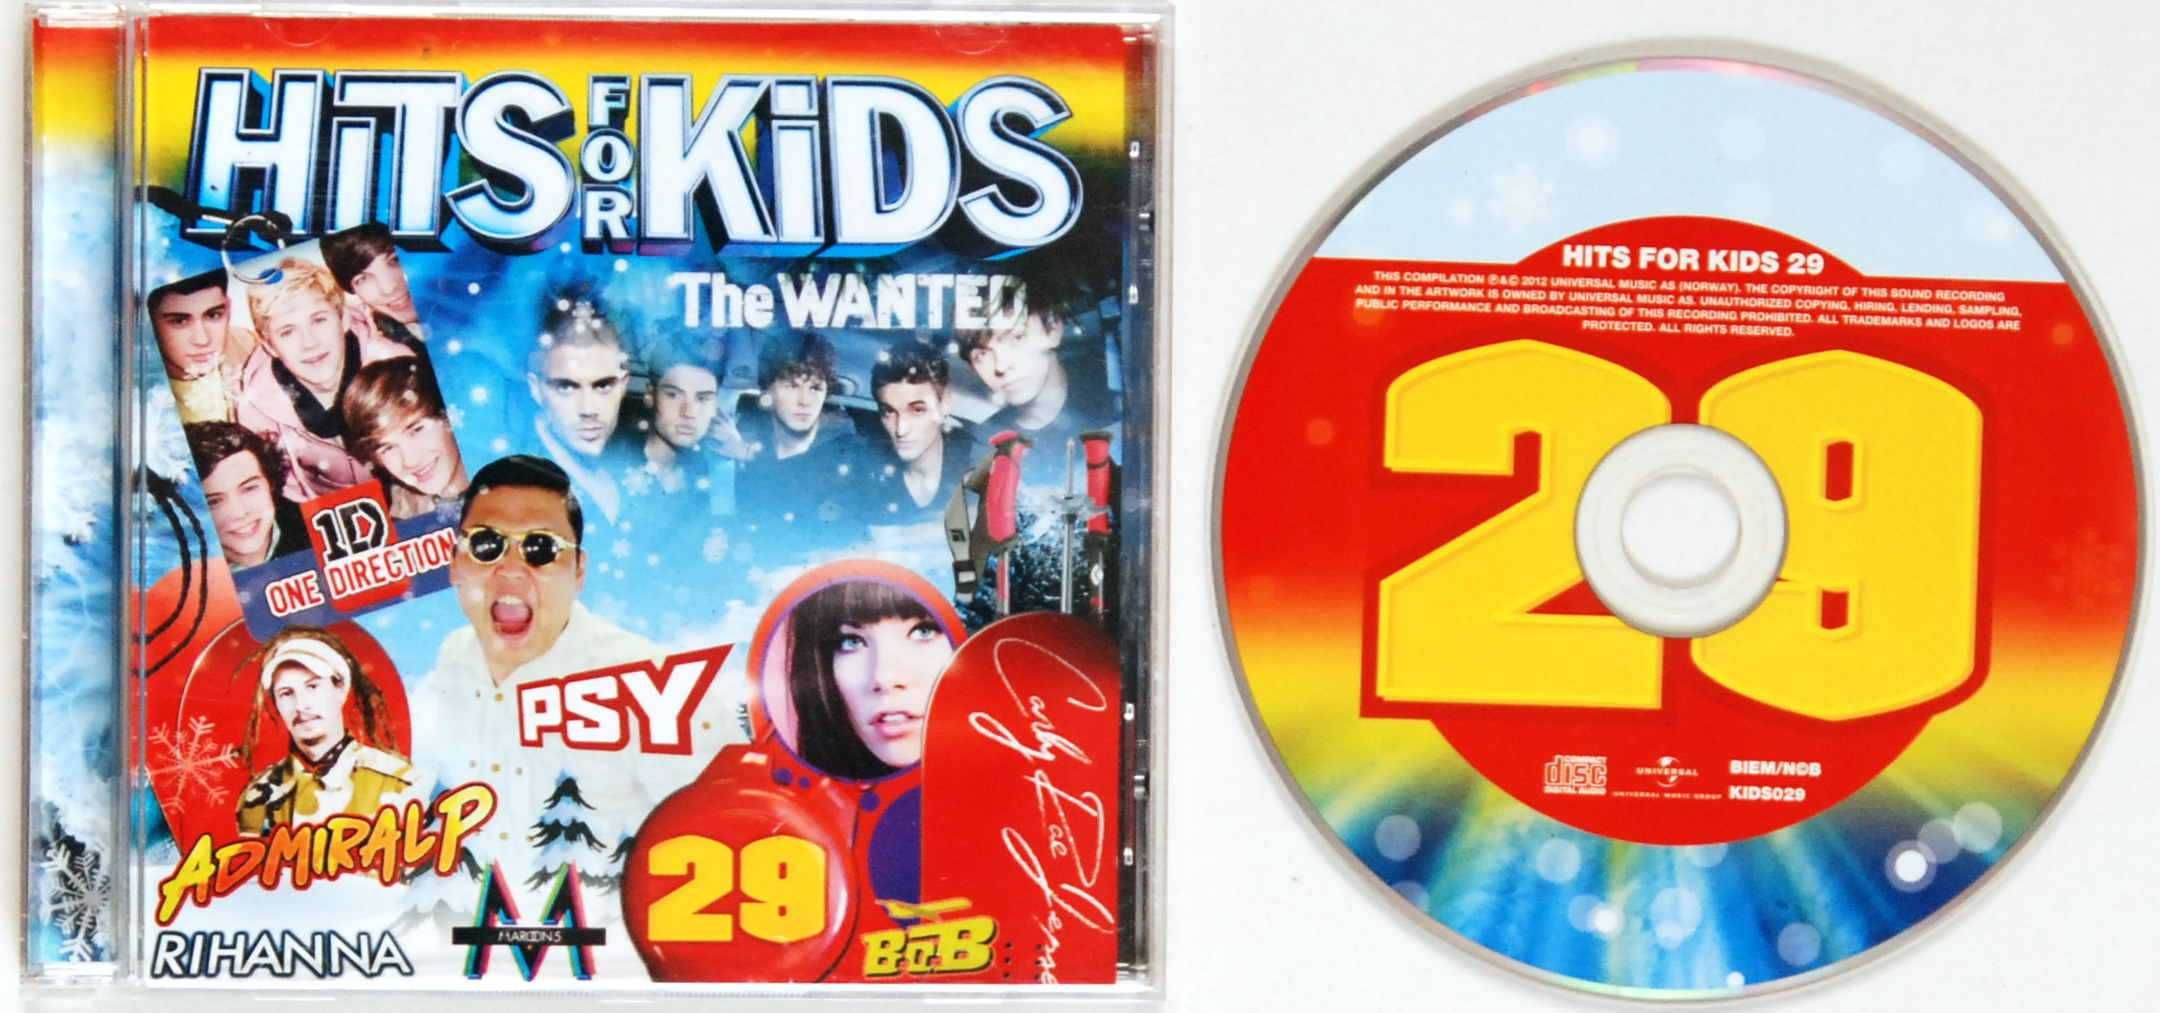 (CD) VA - Hits For Kids 29